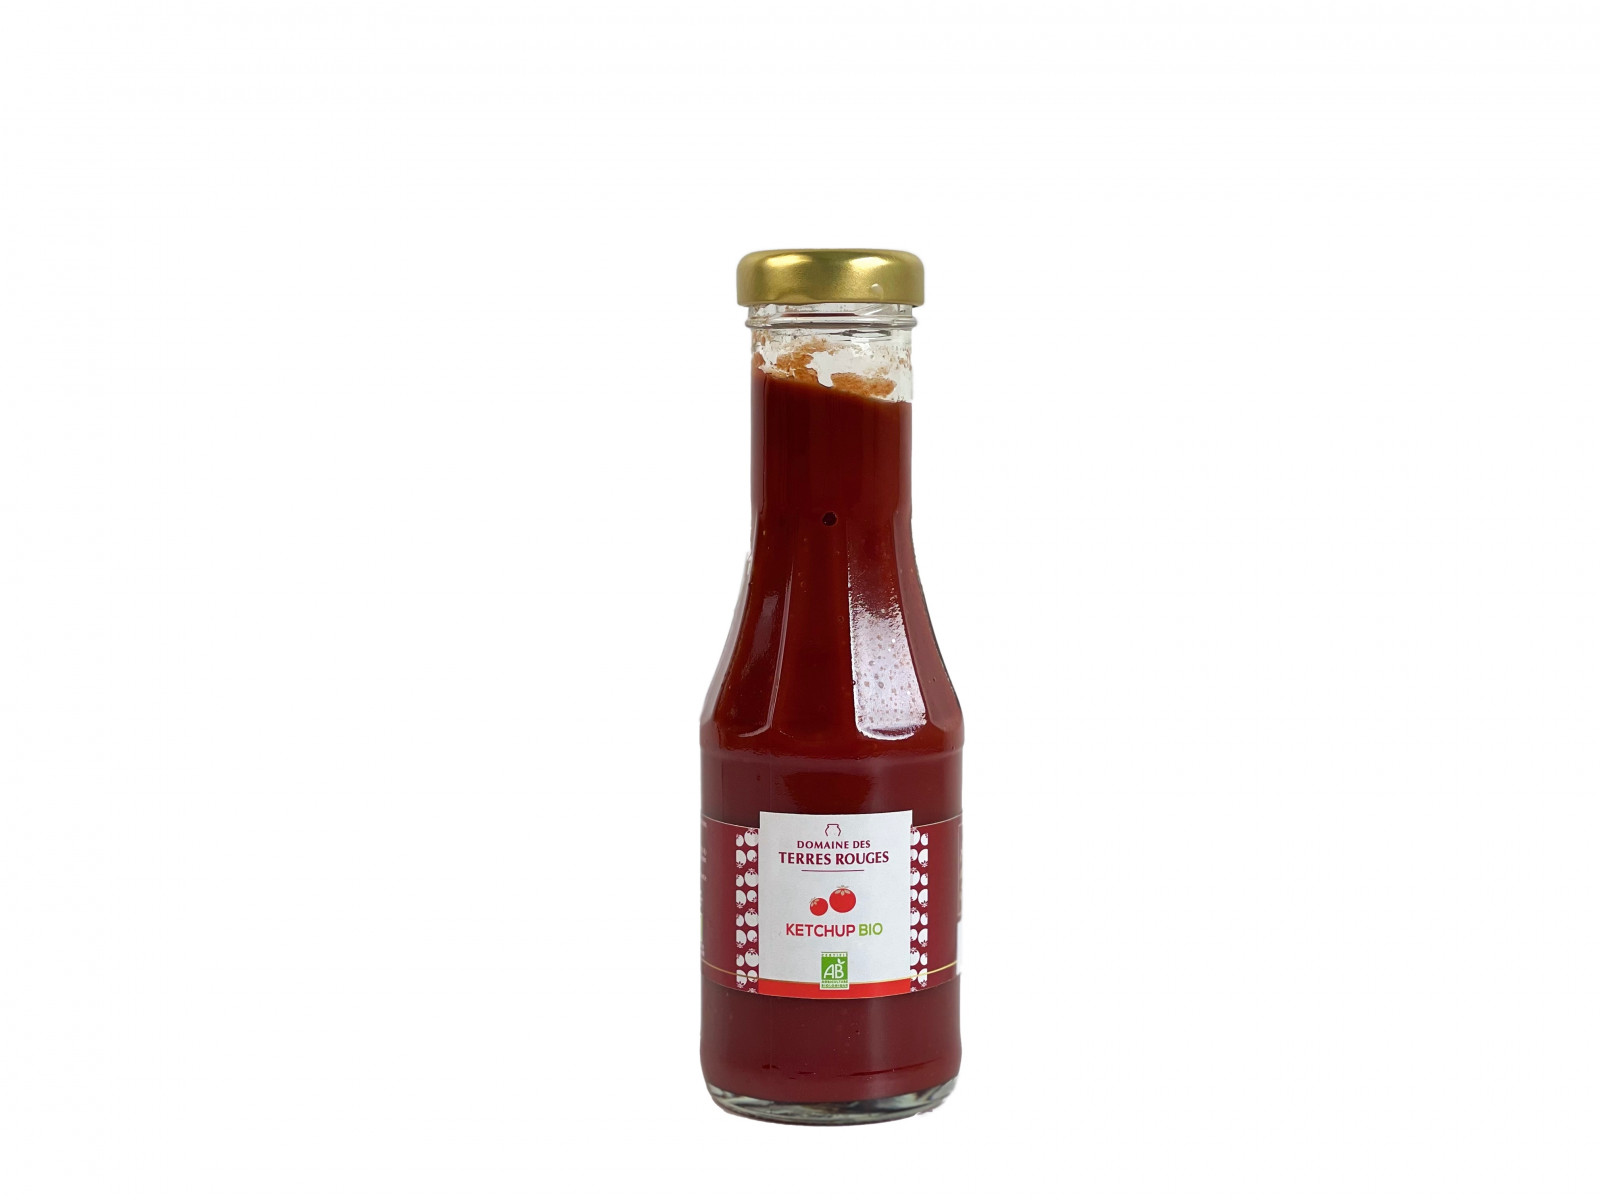 Ketchup Bio Domaine des Terres Rouges 285g